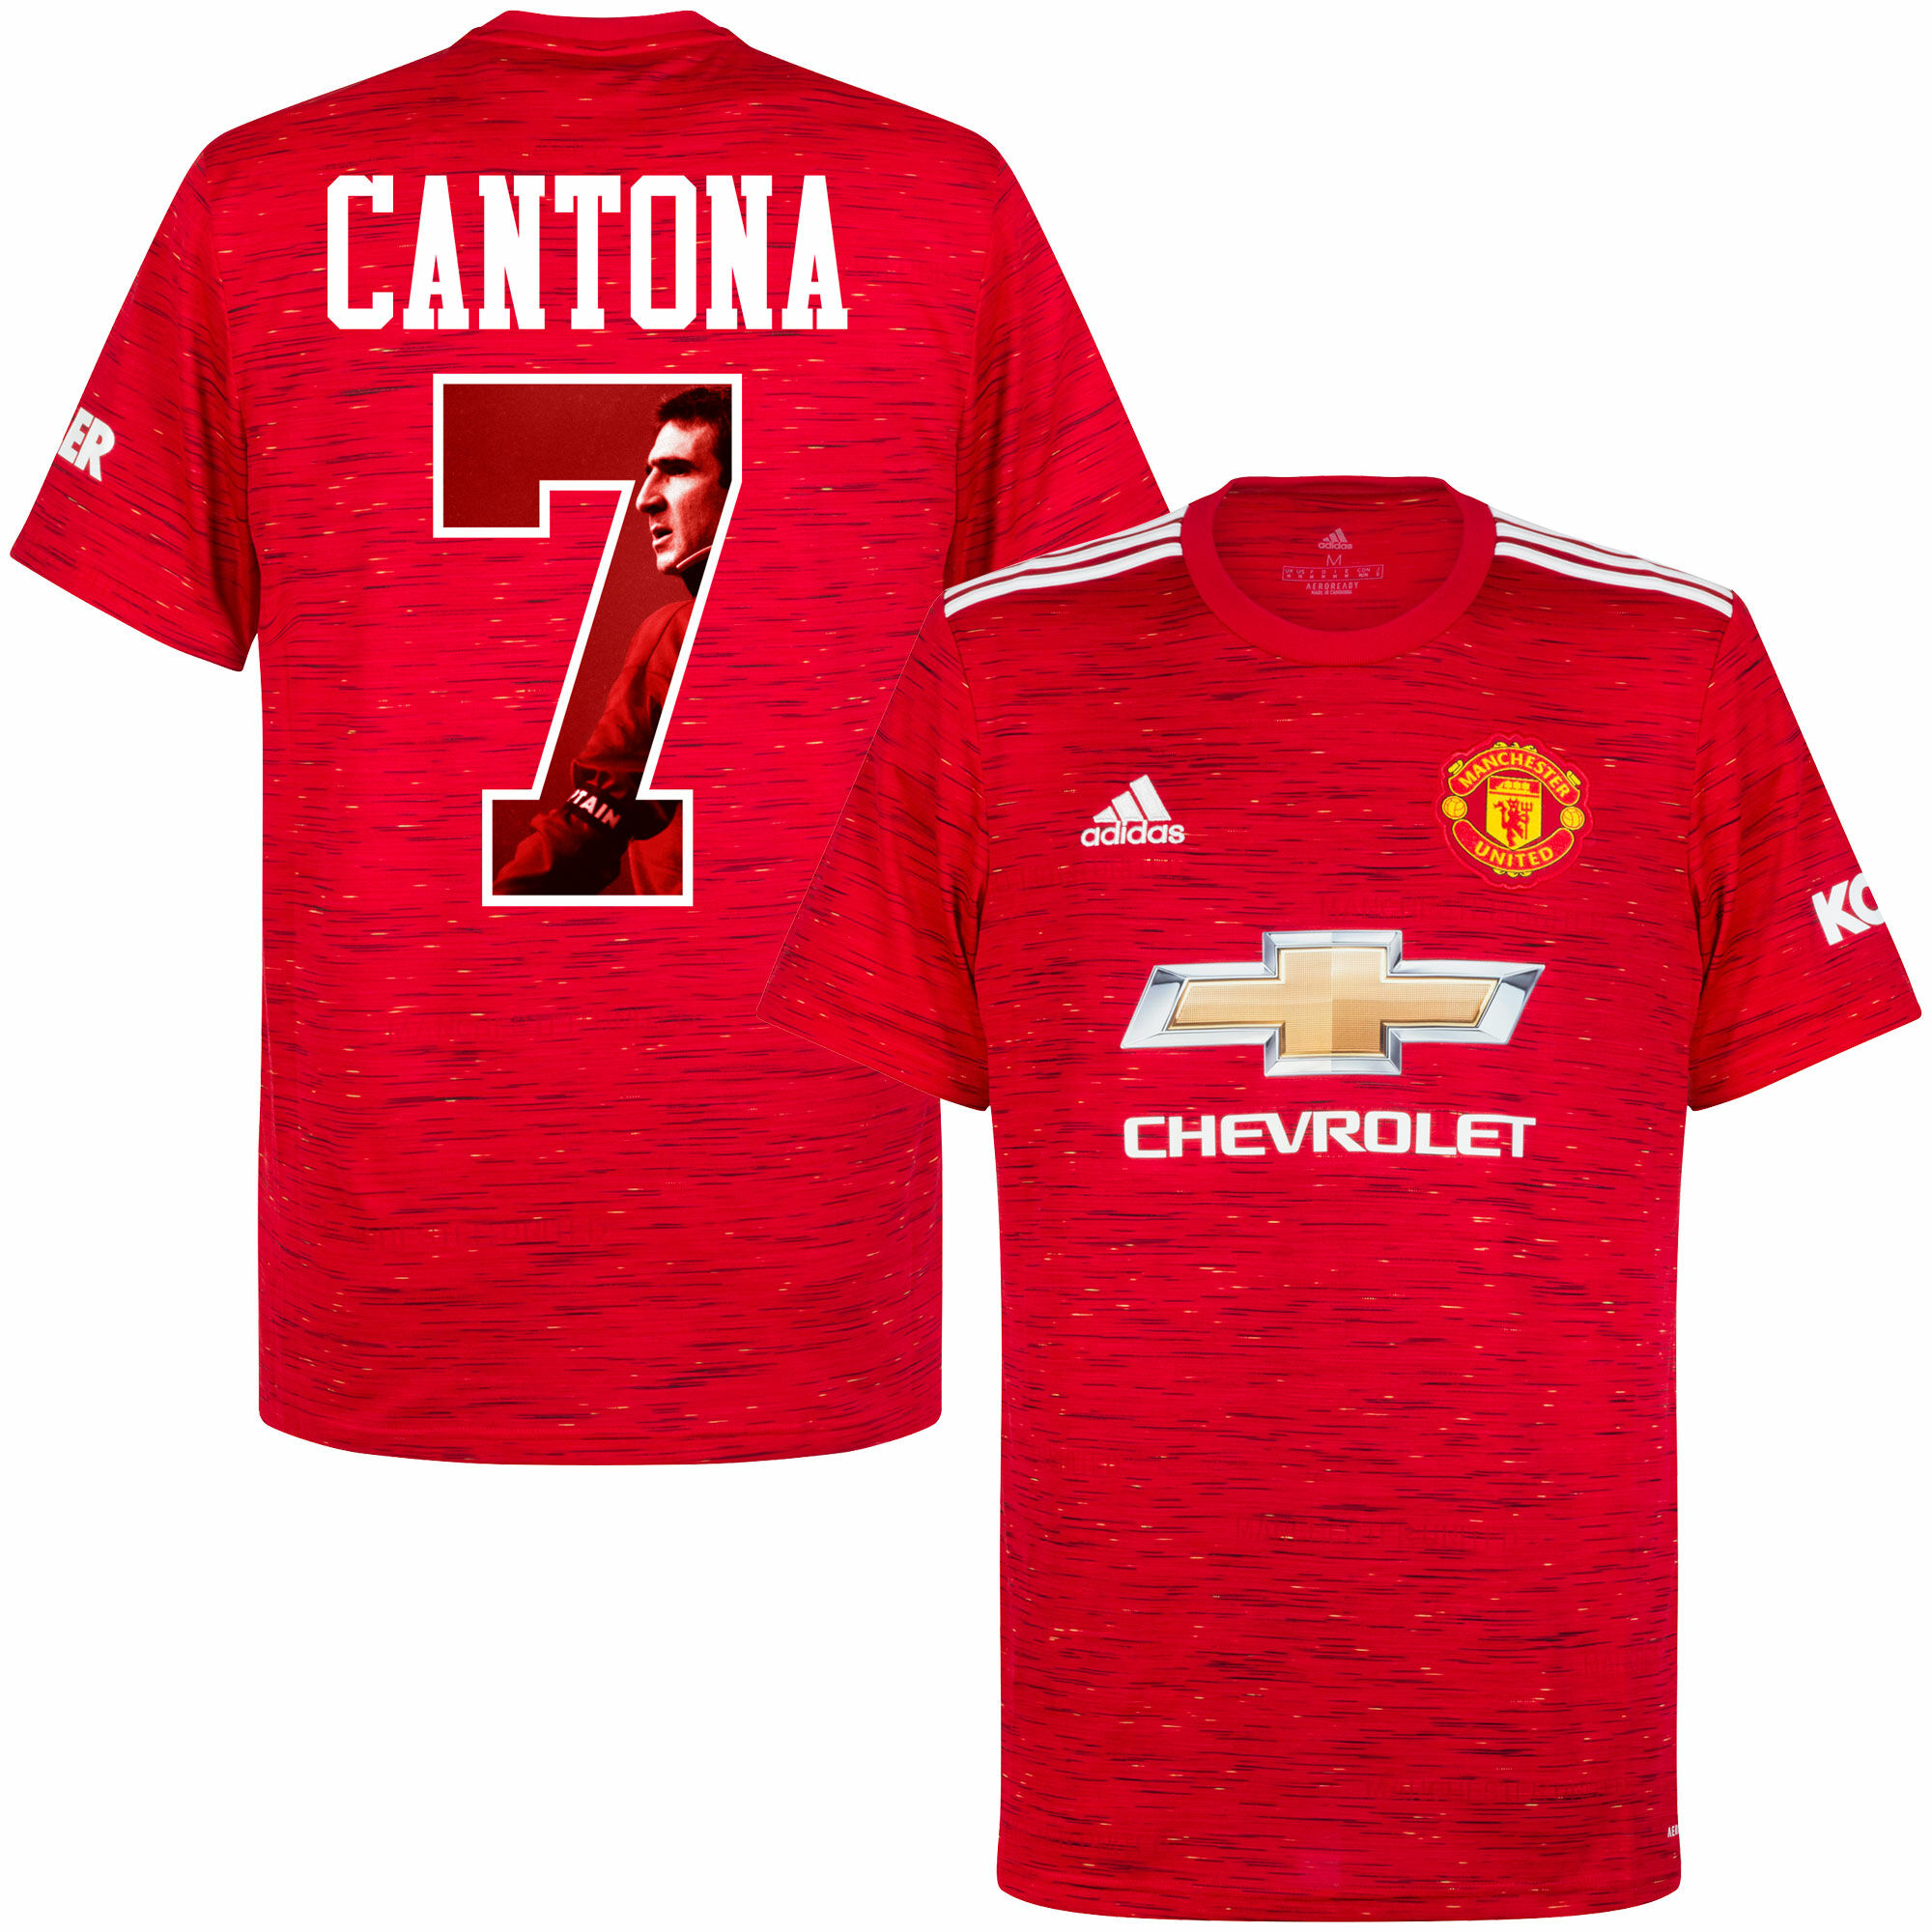 Manchester United - Dres fotbalový - sezóna 2020/21, číslo 7, Eric Cantona, domácí, červený, potisk s obrázkem